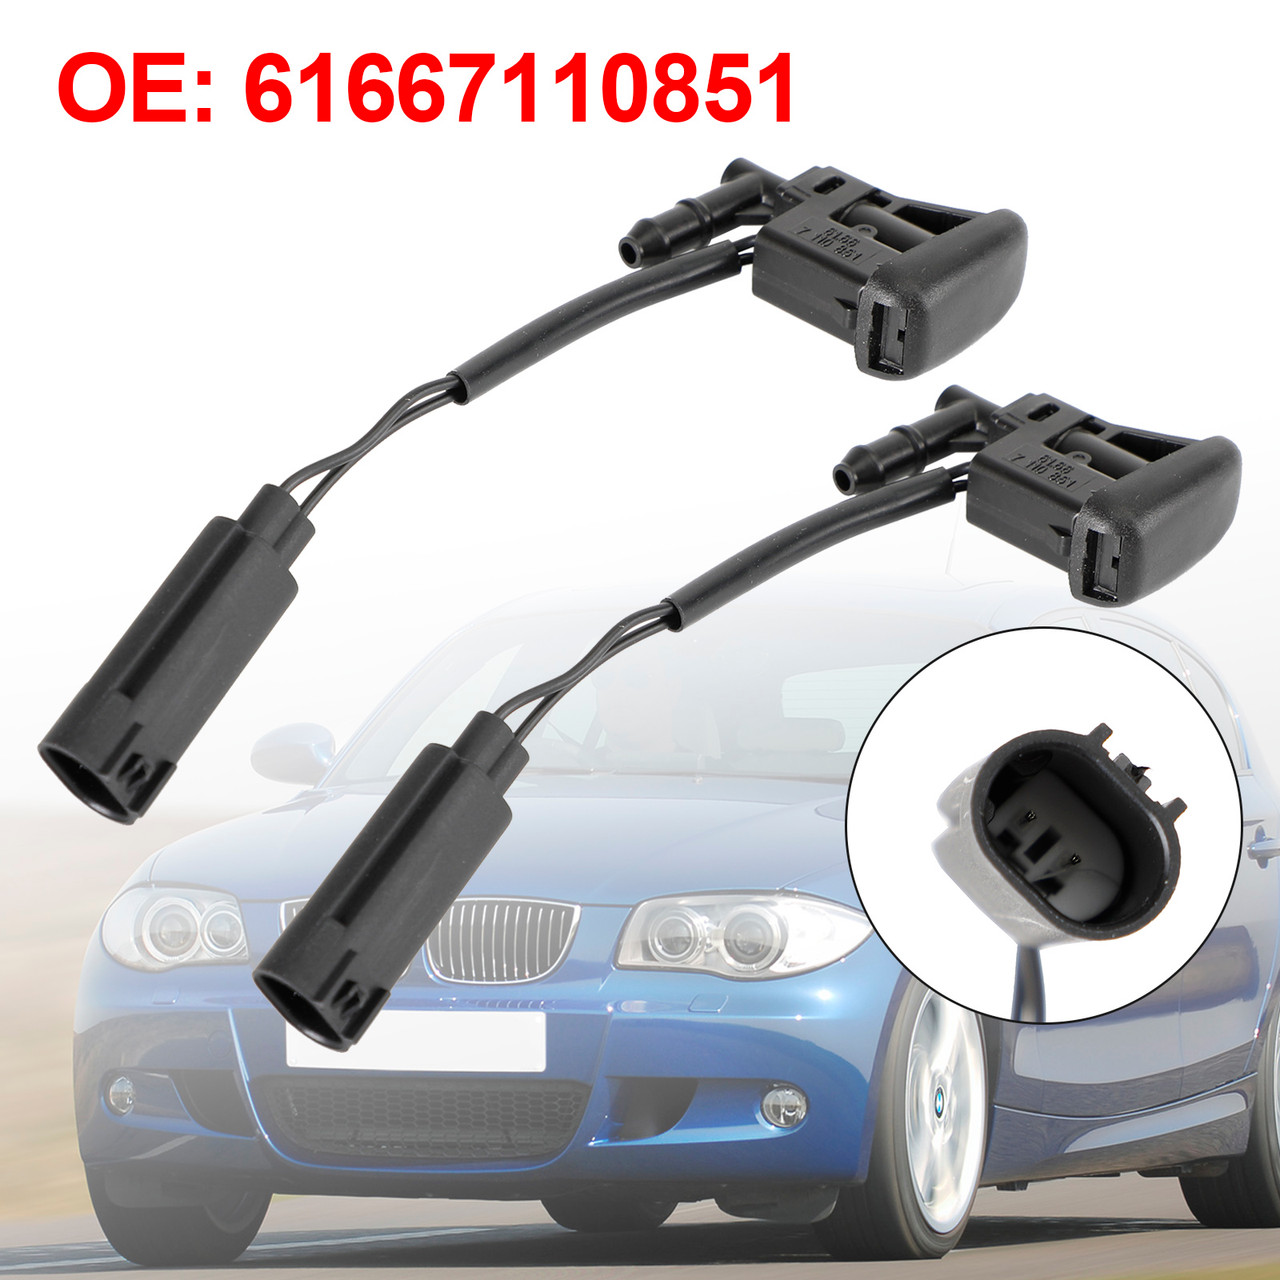 2X Windshield Wiper Nozzle Spray Heated for BMW E88 X3 E83 X5 E53 61667110851